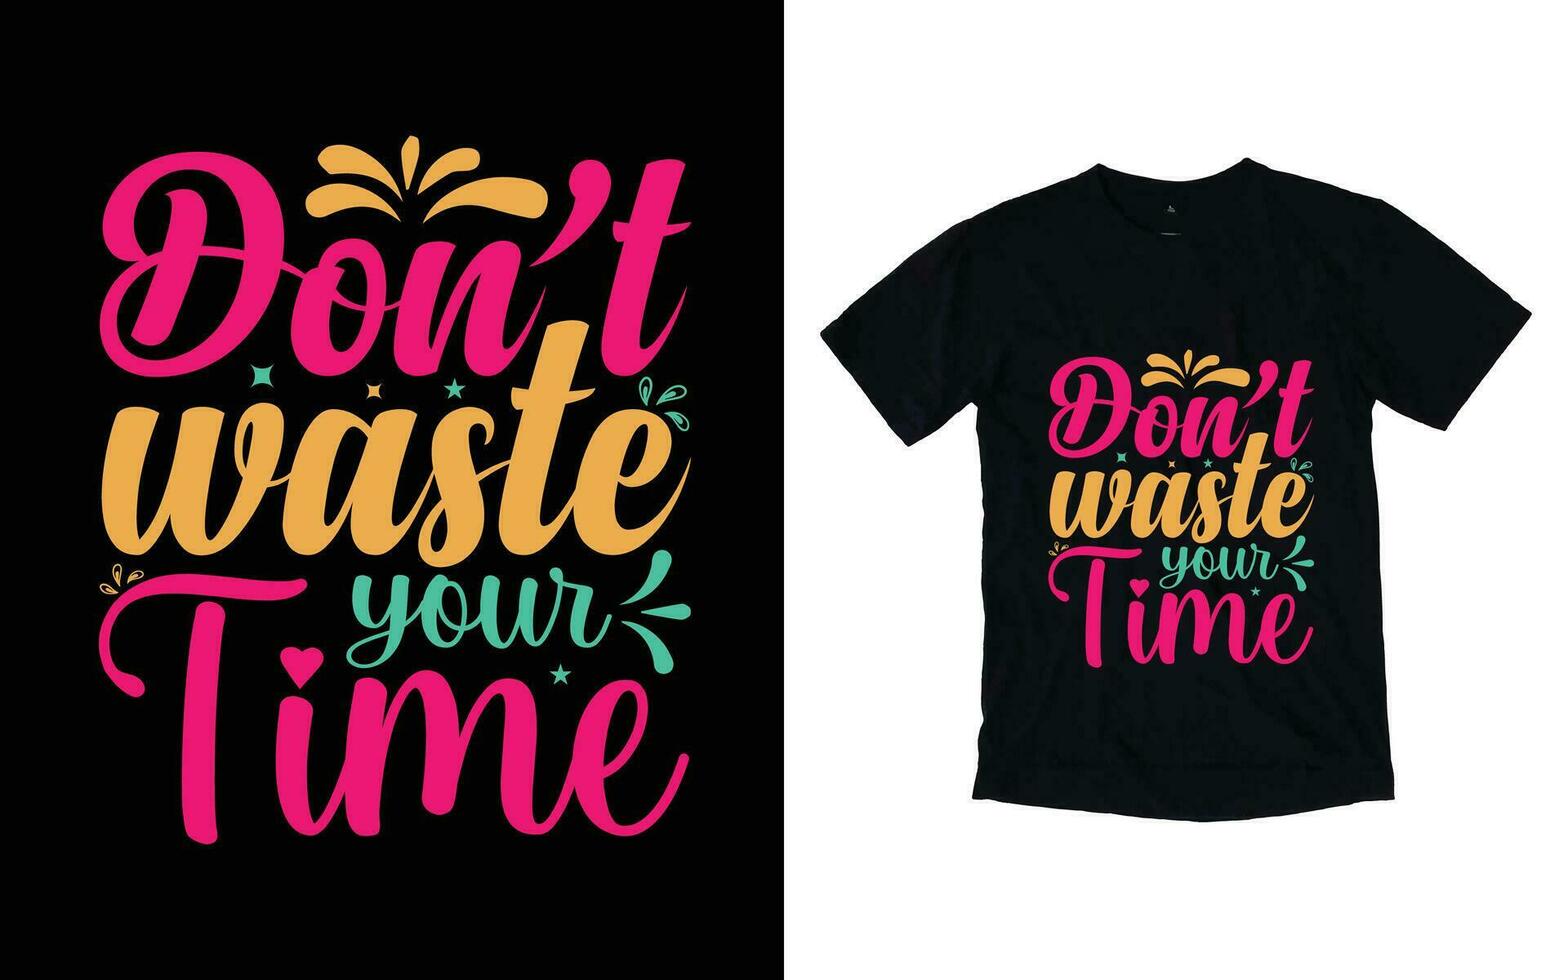 inte avfall din tid motiverande typografi t-shirt design, inspirera t-shirt design, positiv citat t-shirt design vektor